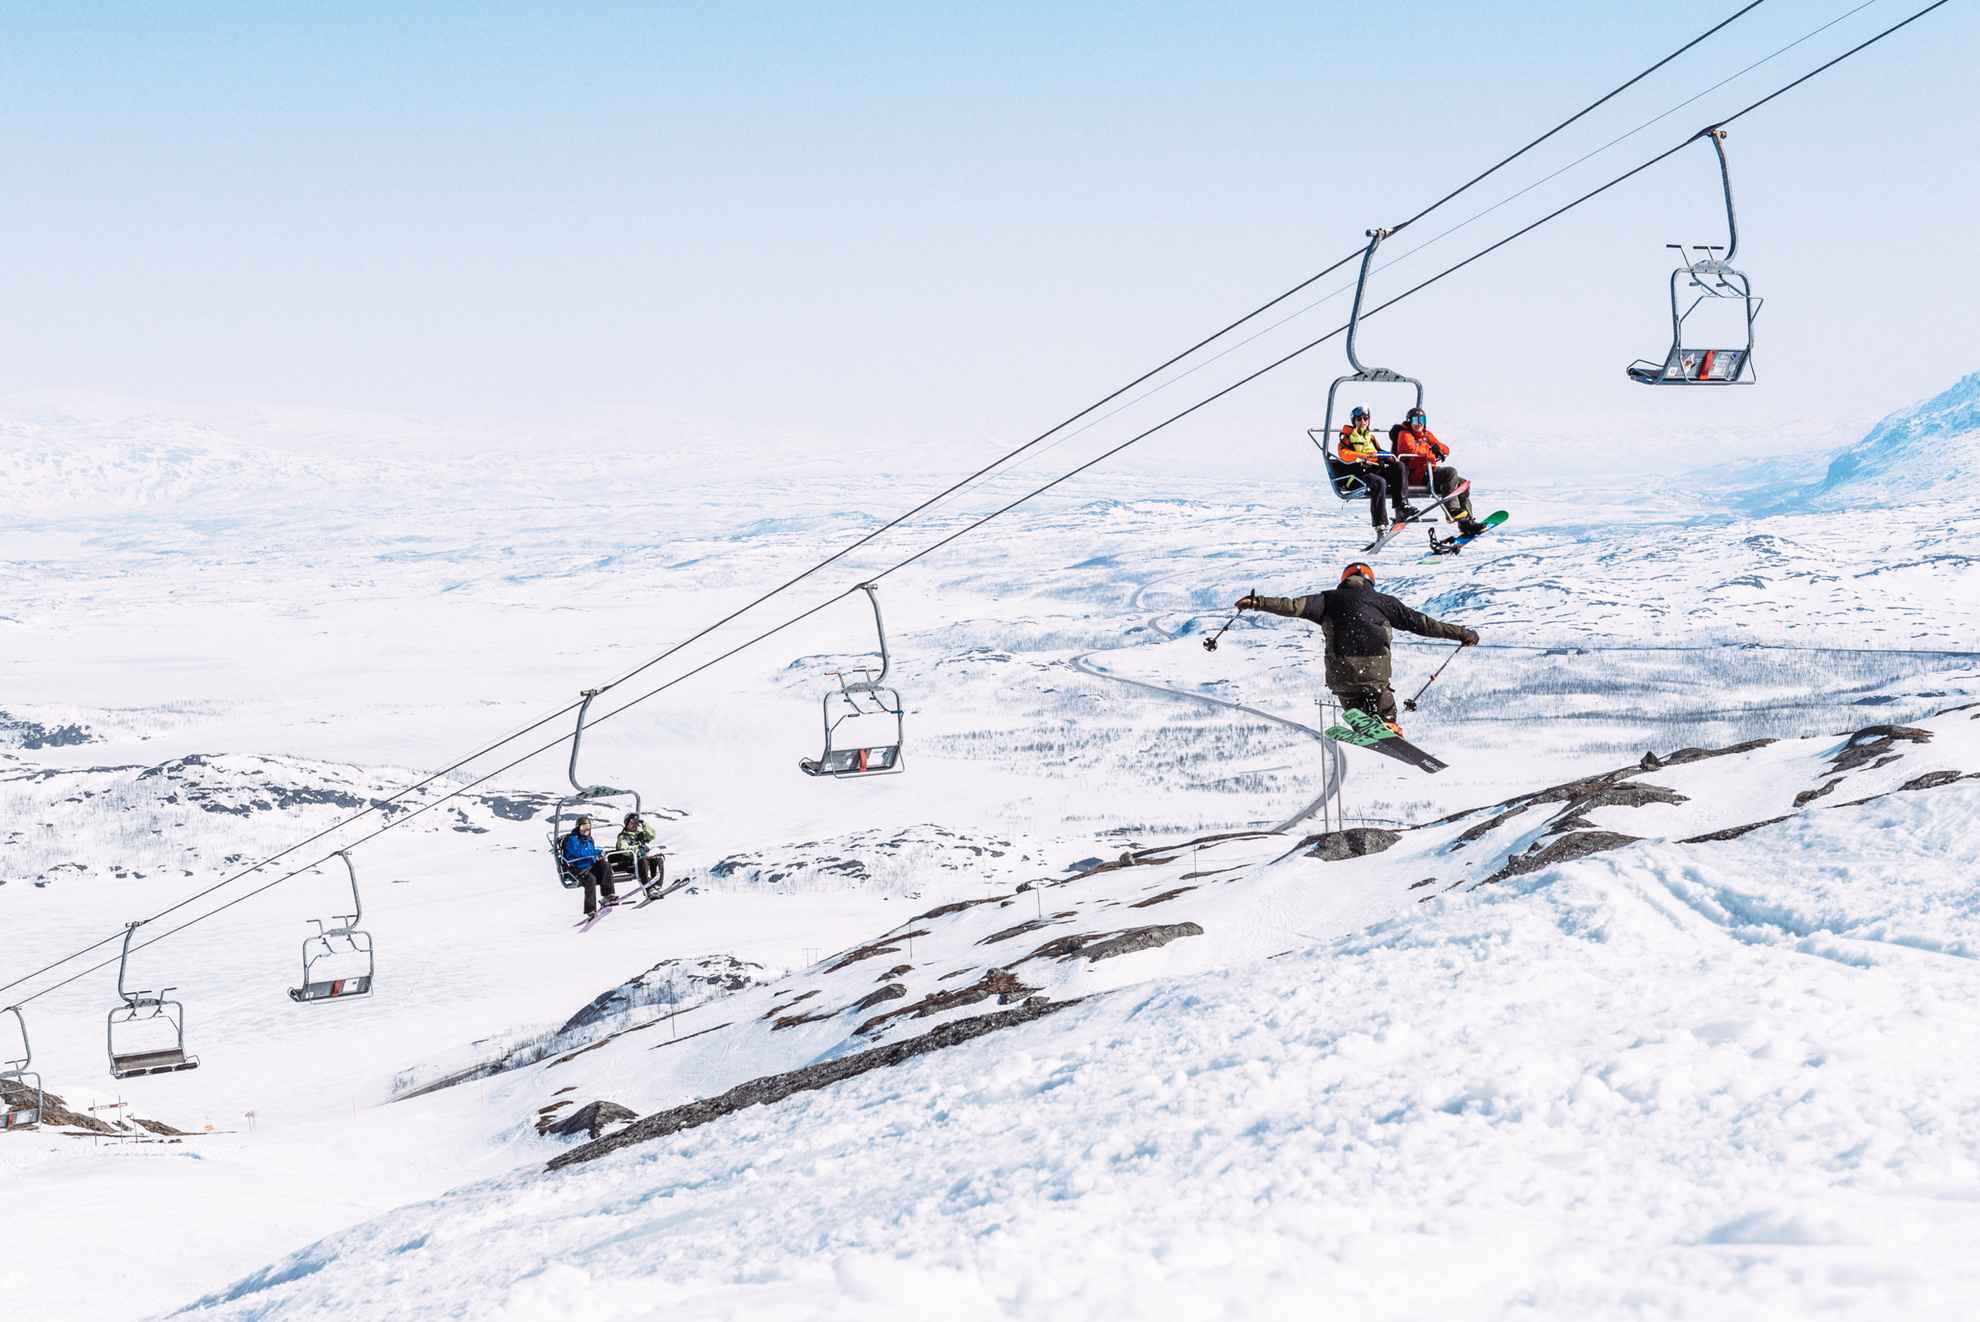 Mensen die op een skilift zitten en naar een persoon kijken die met ski's springt.